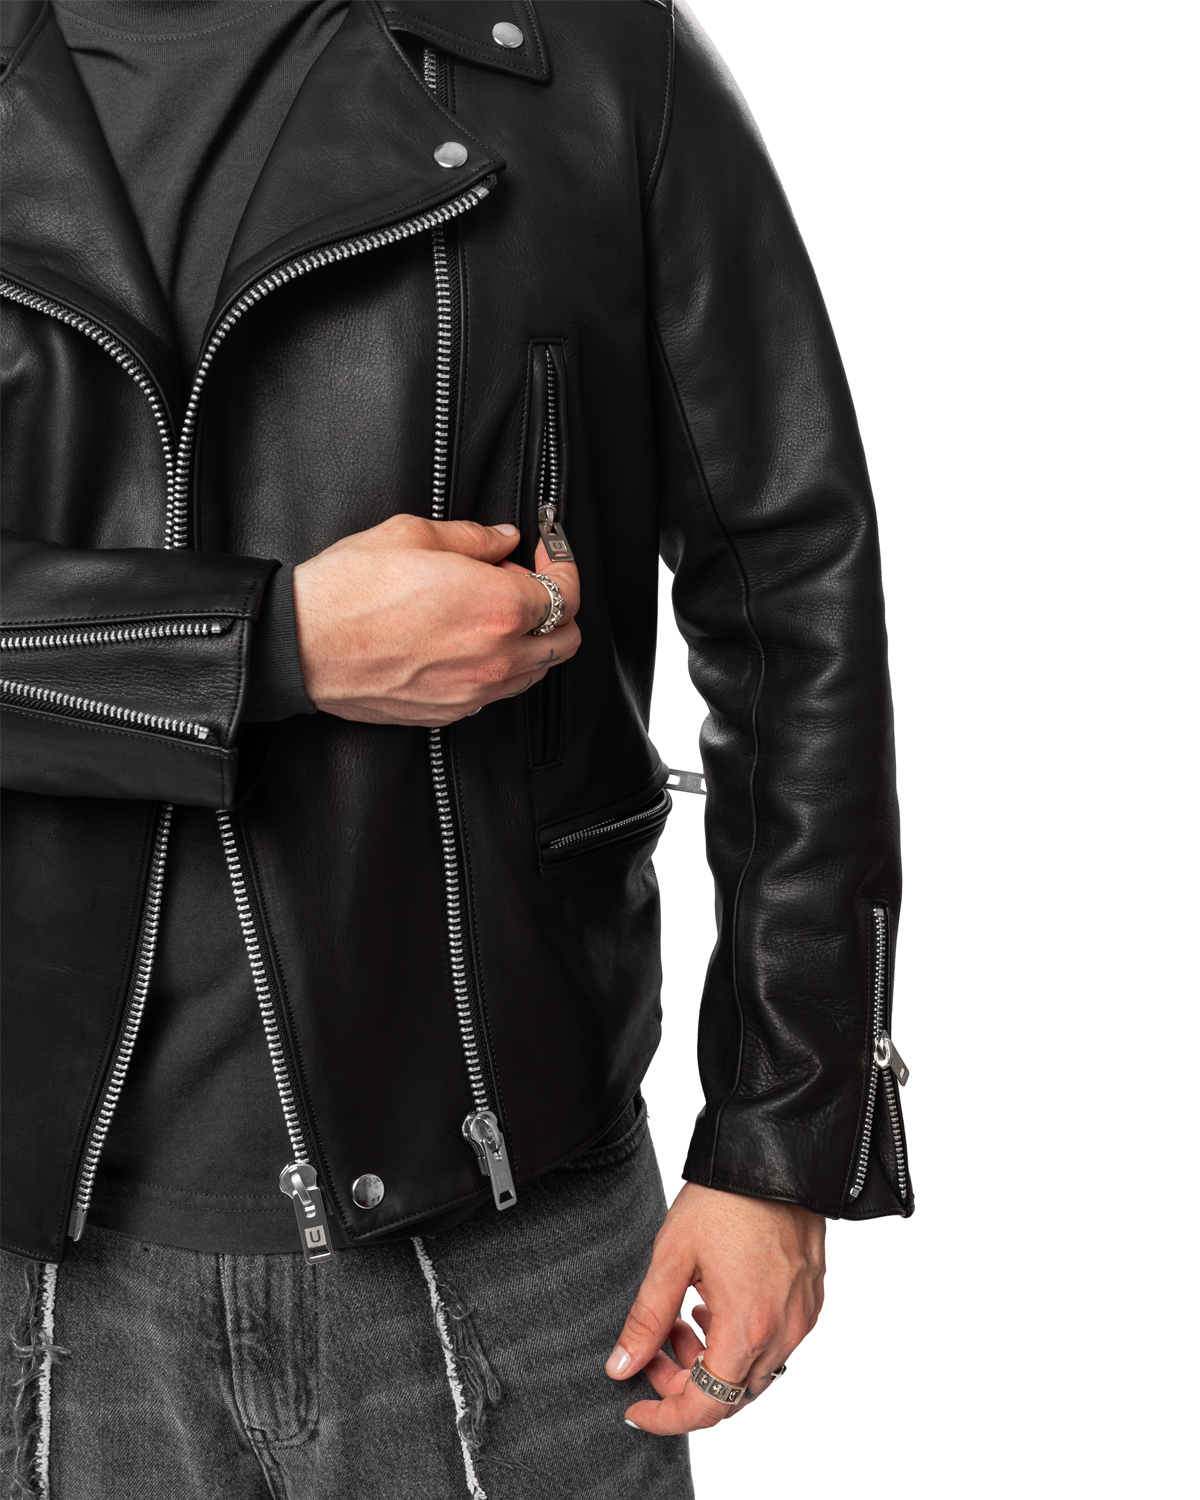 UNDERCOVER UC2C9204 Leather Biker Jacket Black – LIKELIHOOD